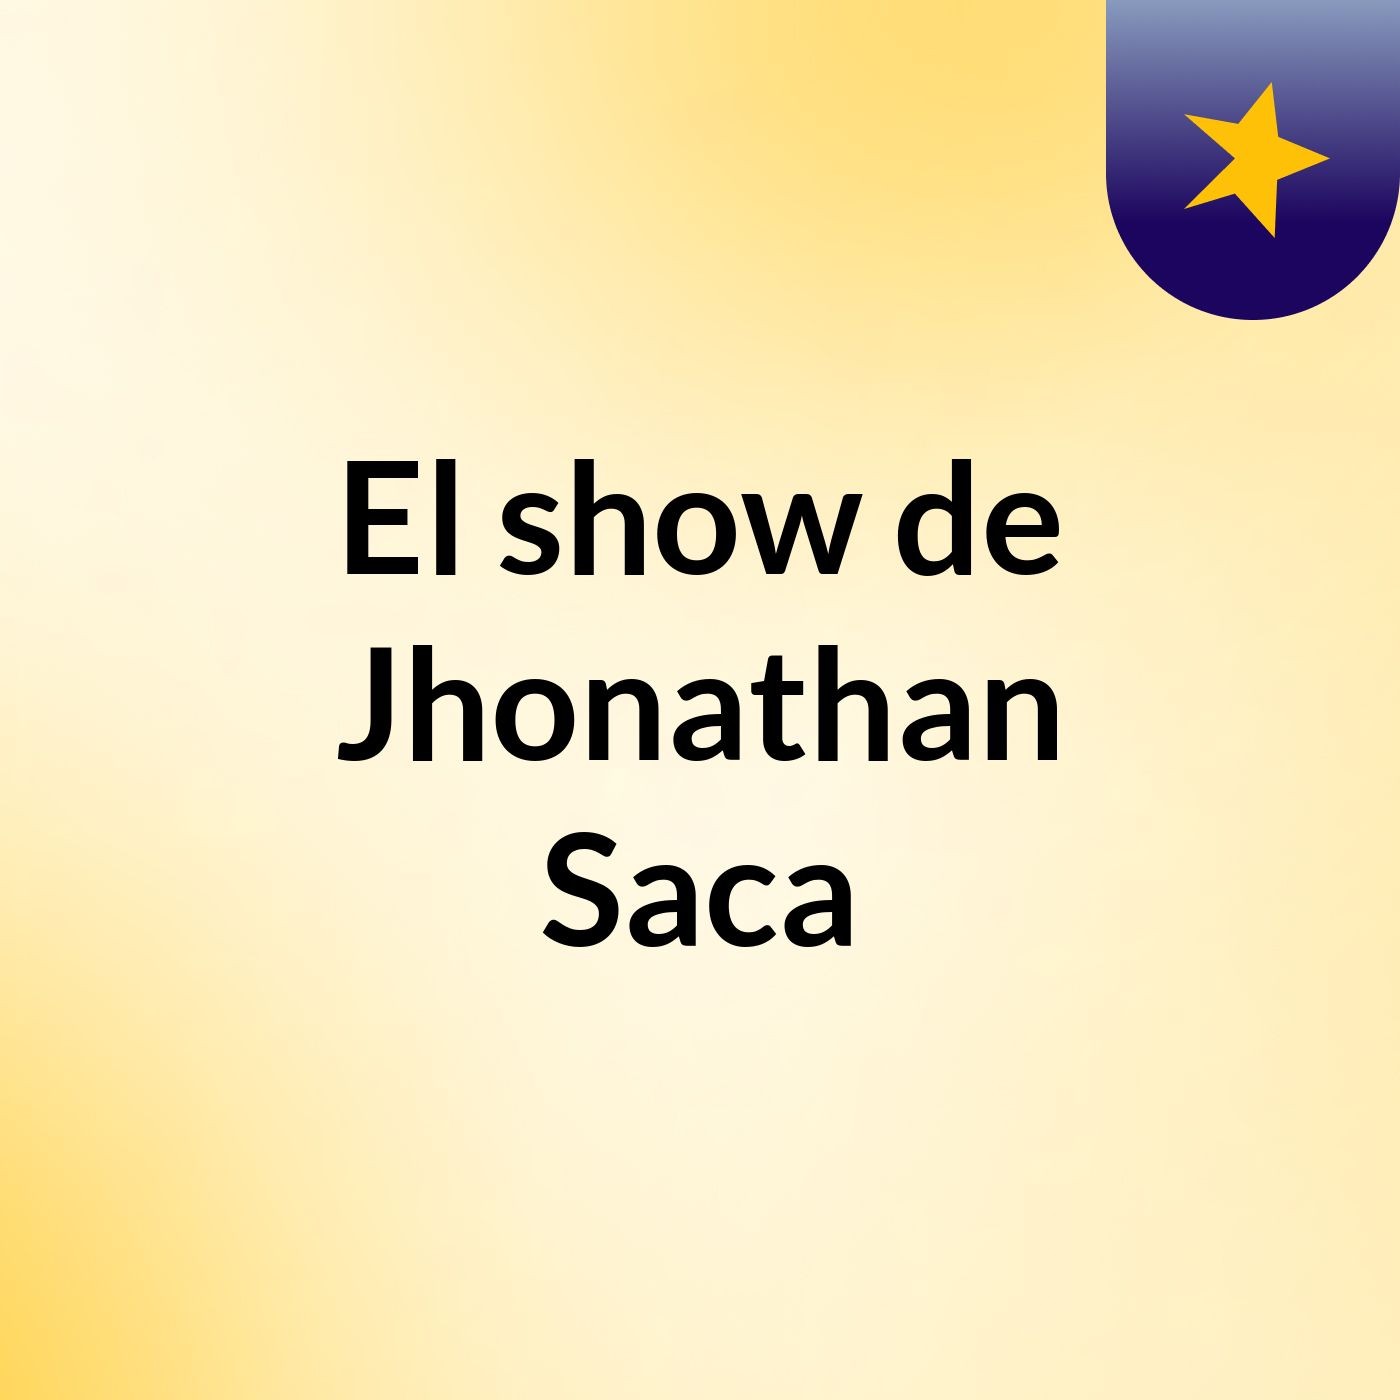 El show de Jhonathan Saca